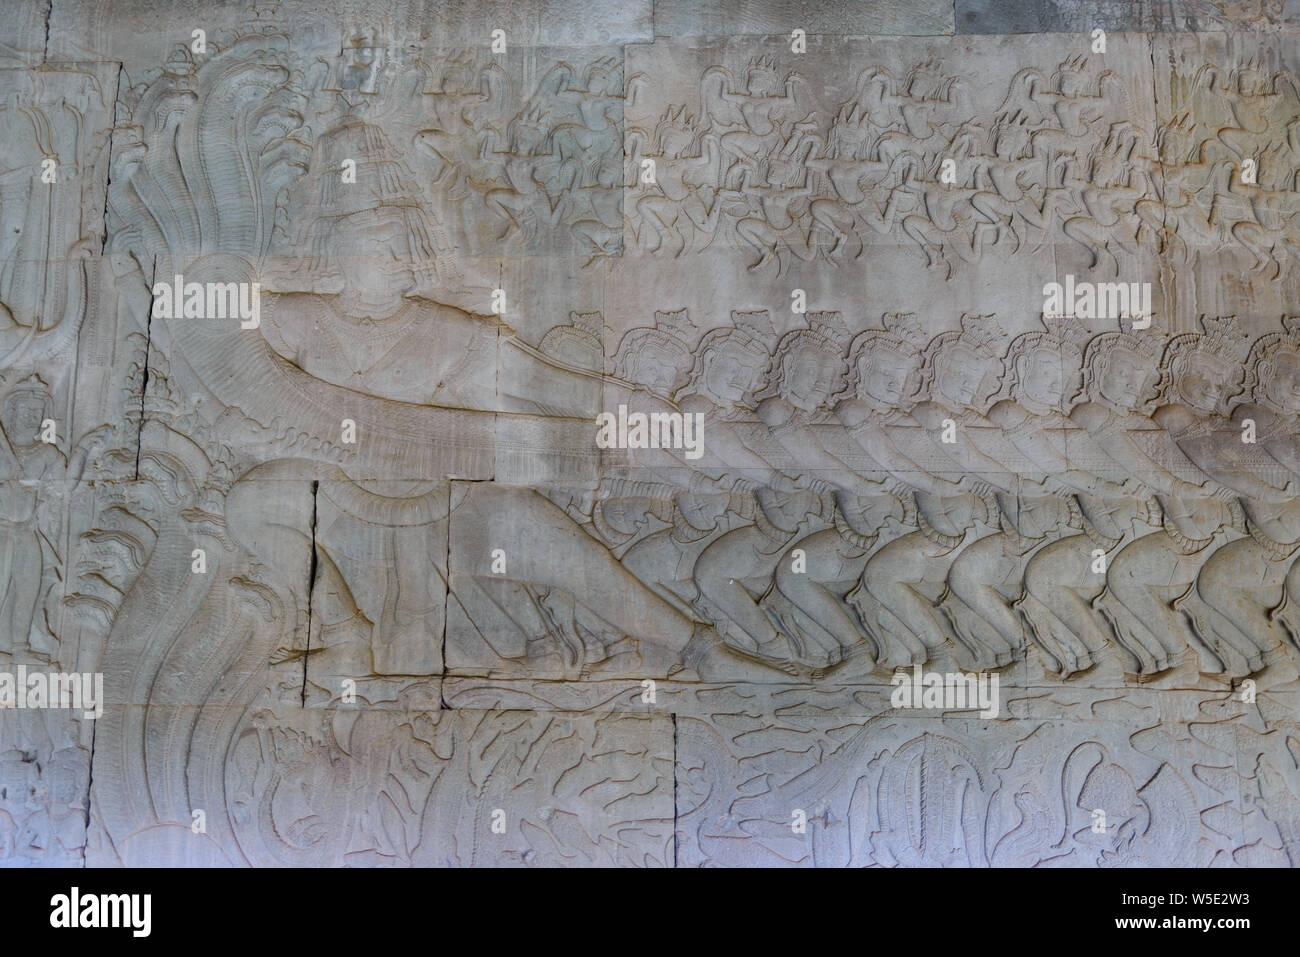 Berühmte bas Reflief in der Wand von Angkor Wat Tempel geschnitzt, Weltkulturerbe und die meisten touristische Website besucht, Kambodscha. Details, Nahaufnahme der epischen Schlachten Stockfoto